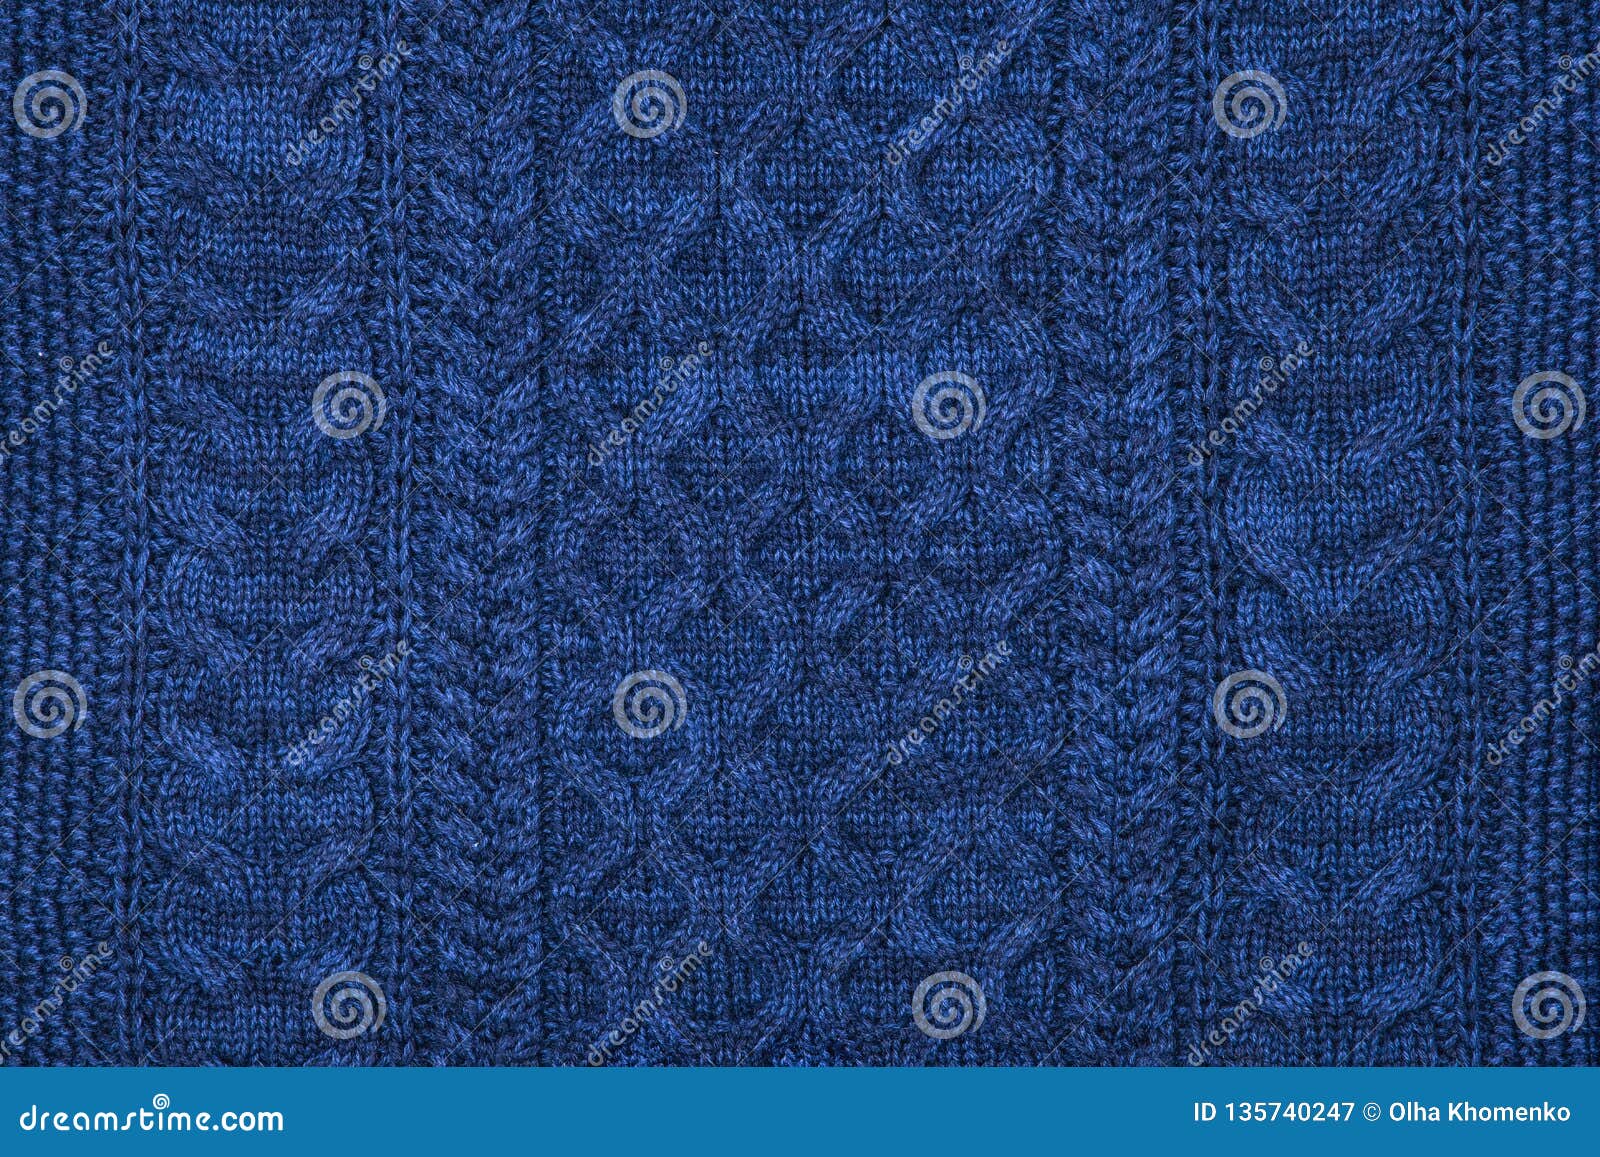 dark blue sweater knit textured background.